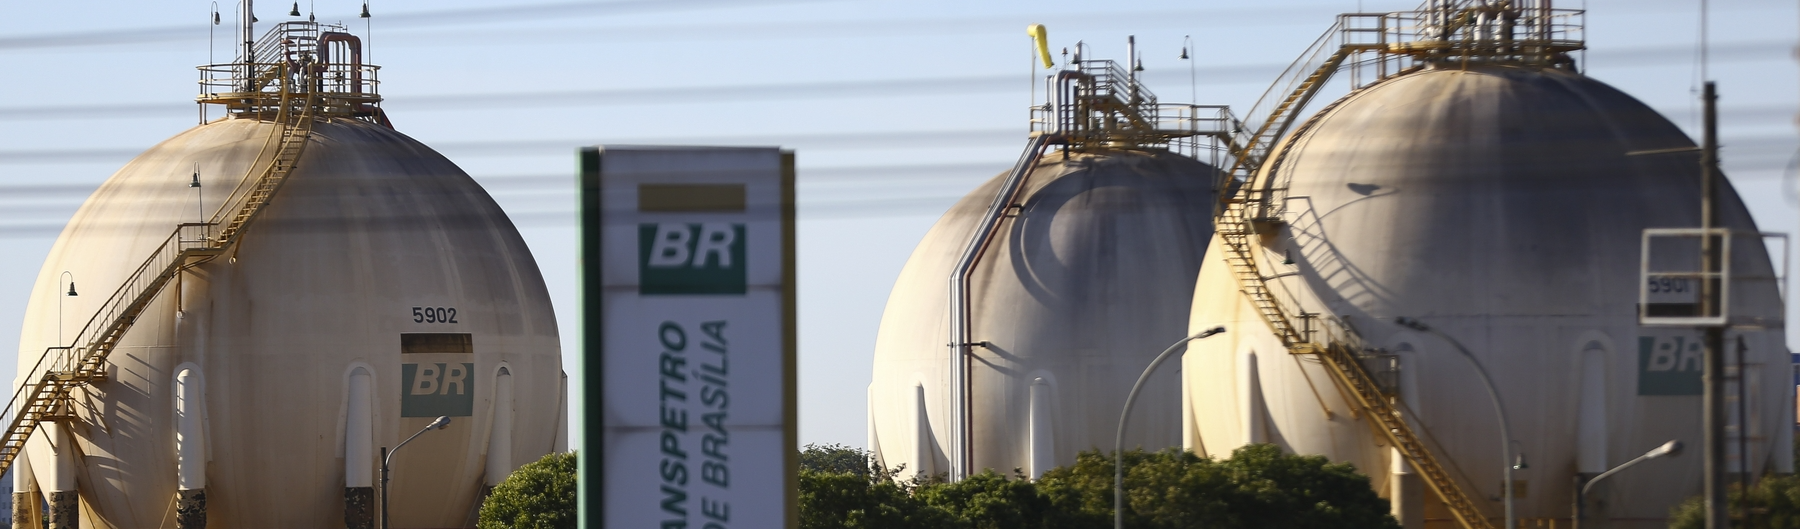 Governo Lula dá fim ao PPI! Petrobras anuncia novo modelo de preço para os combustíveis